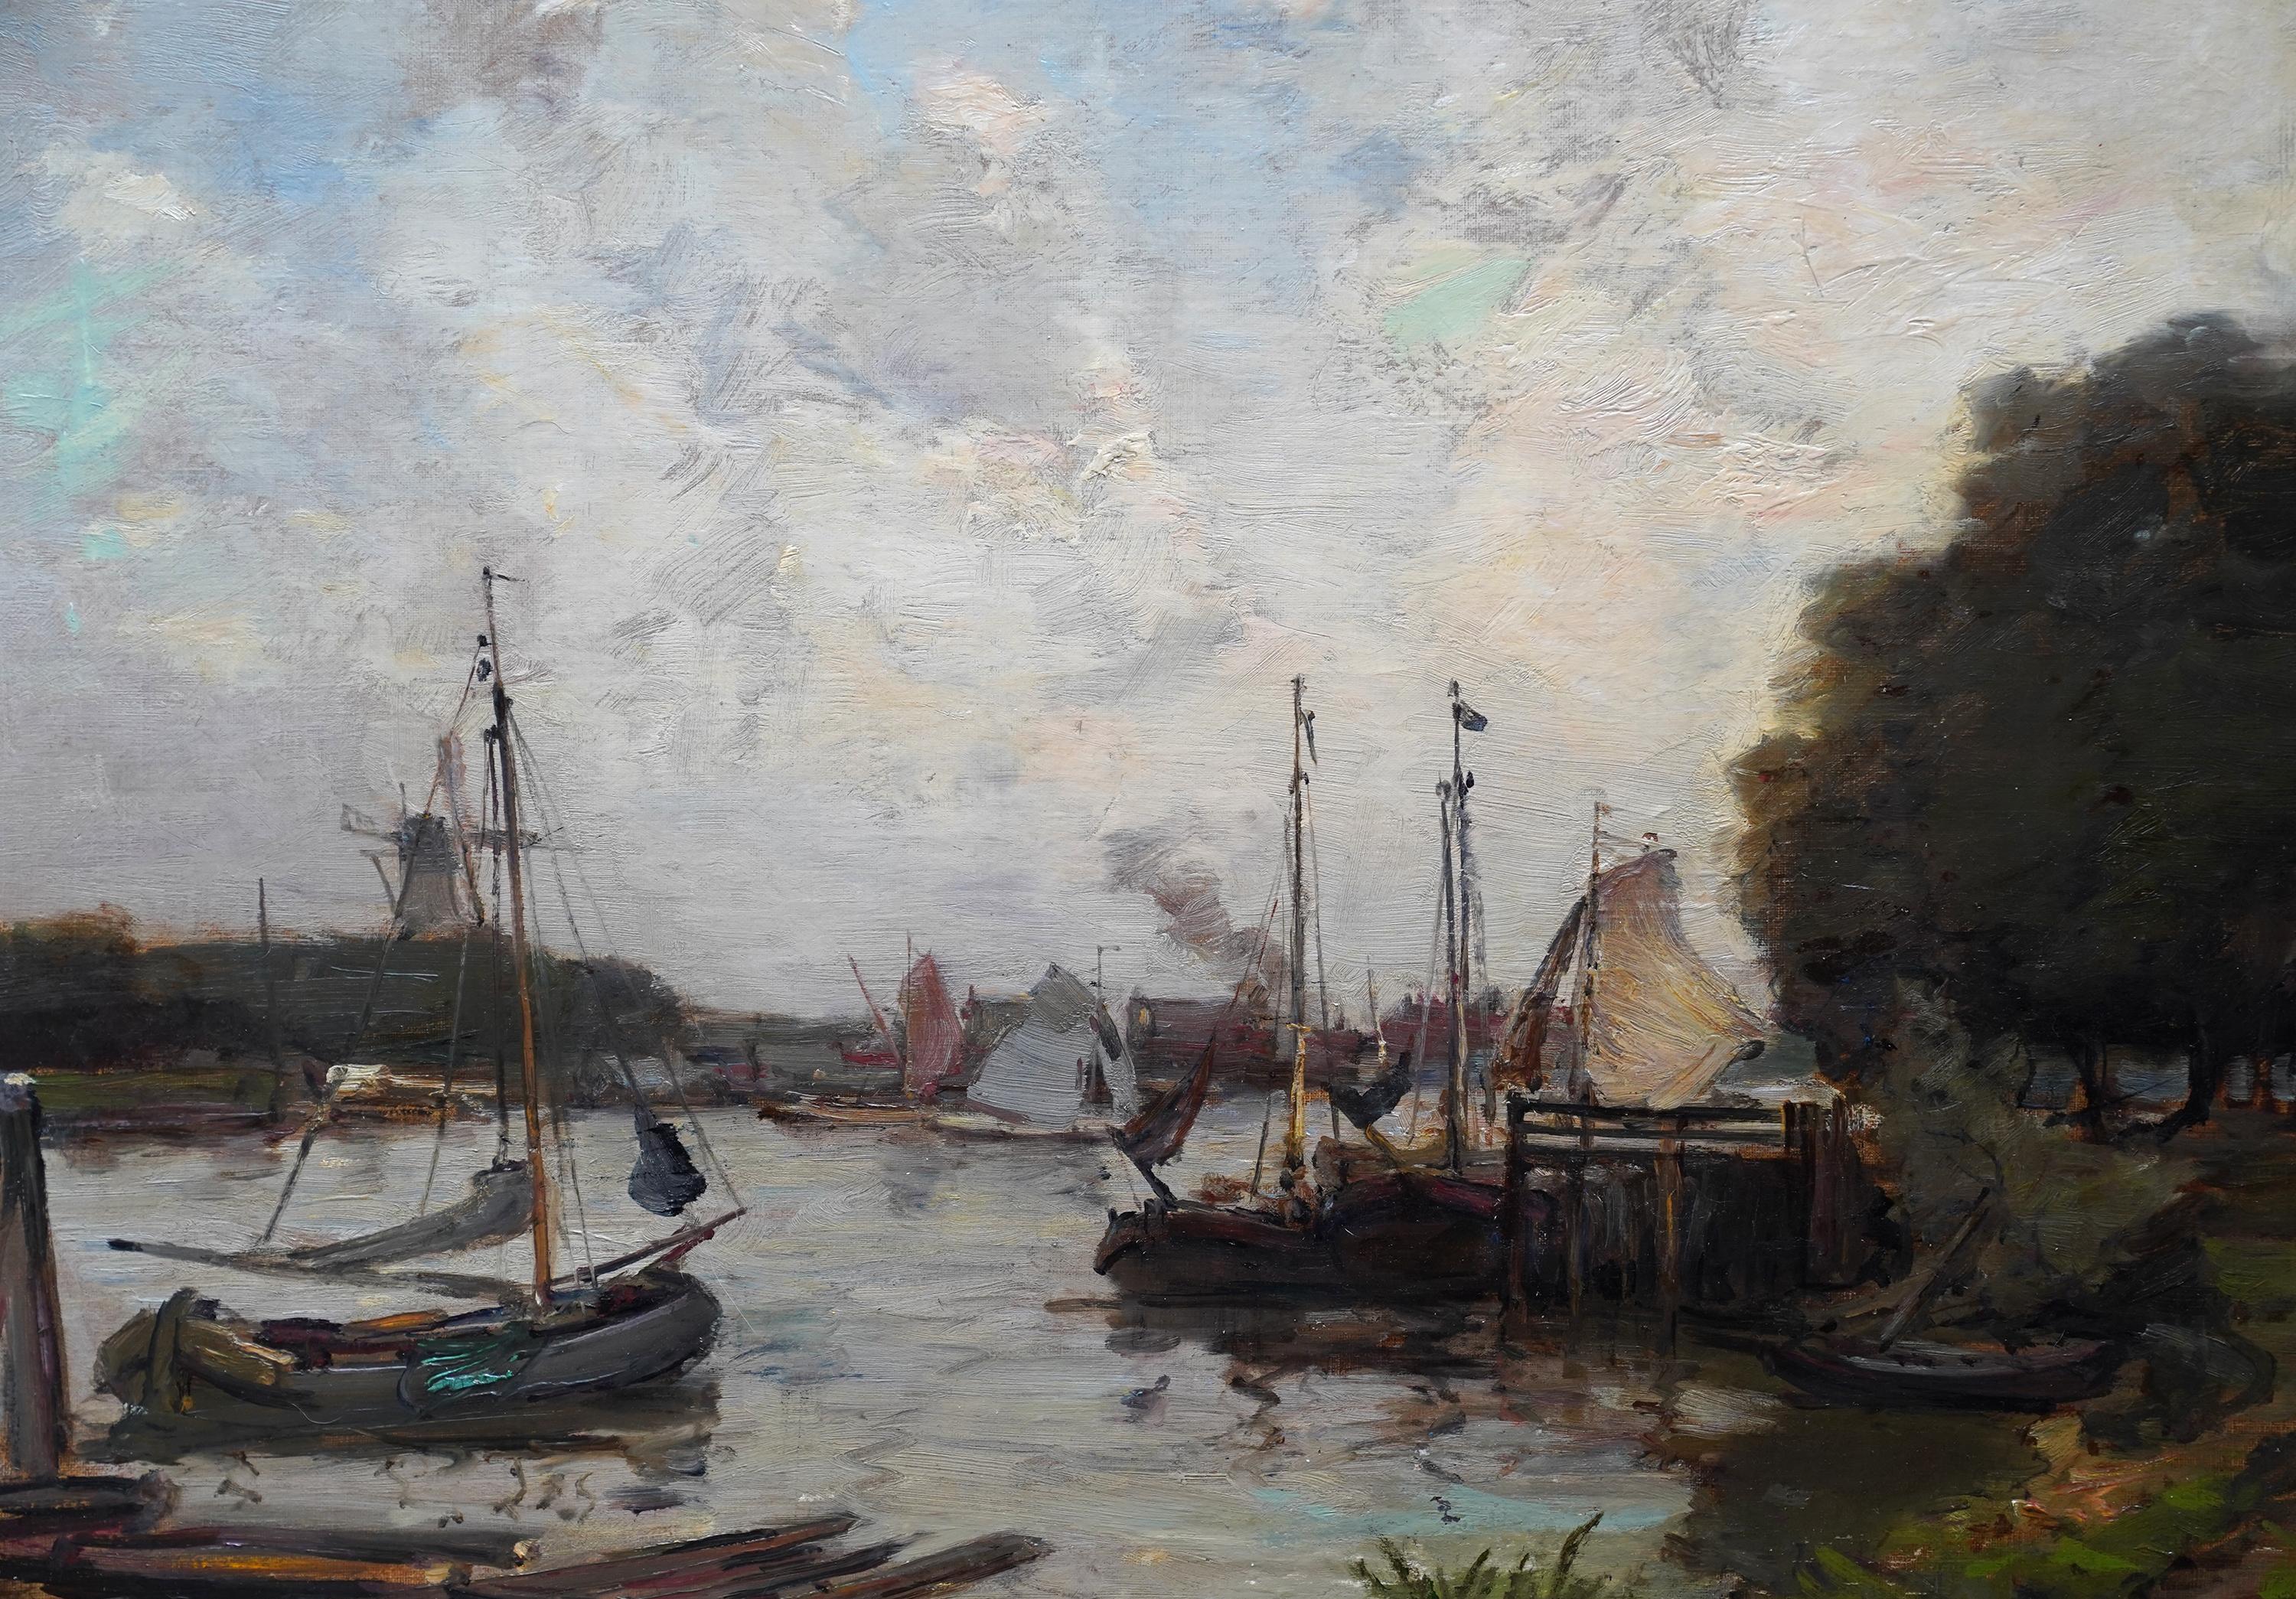 Cette superbe huile impressionniste de l'époque édouardienne est l'œuvre de l'artiste écossais James Campbell Noble RSA. Peinte vers 1910, la composition est une scène portuaire avec des arbres à droite, de nombreux bateaux et un moulin à vent